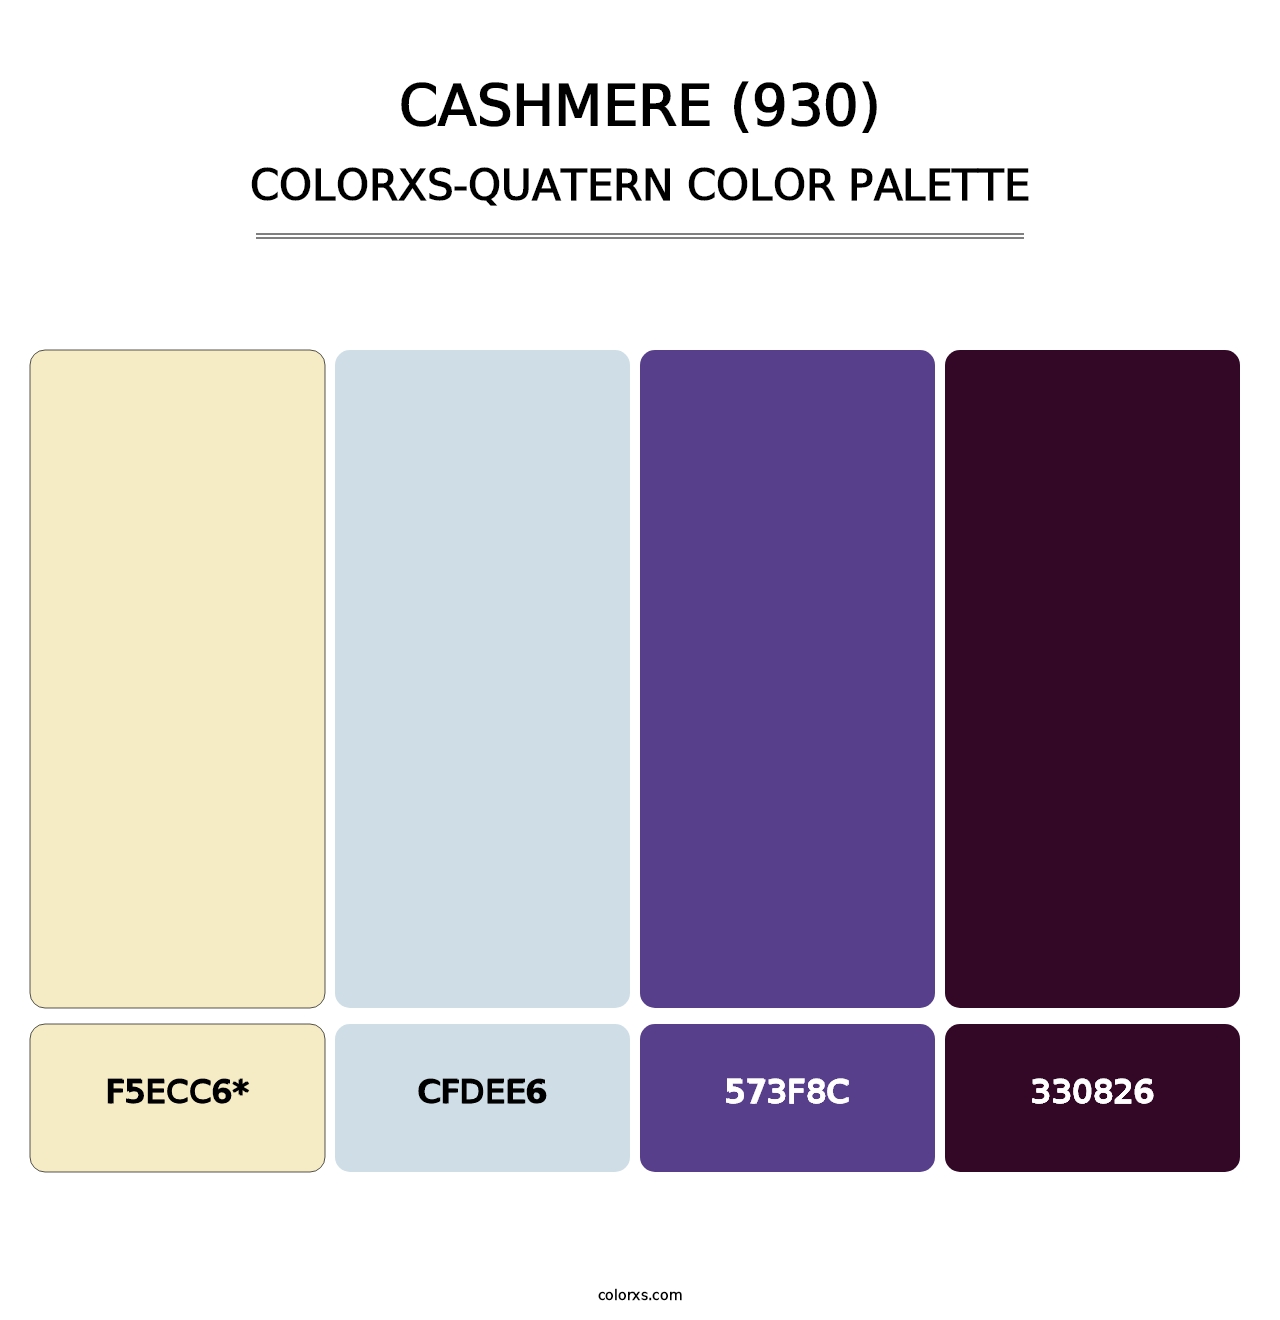 Cashmere (930) - Colorxs Quatern Palette